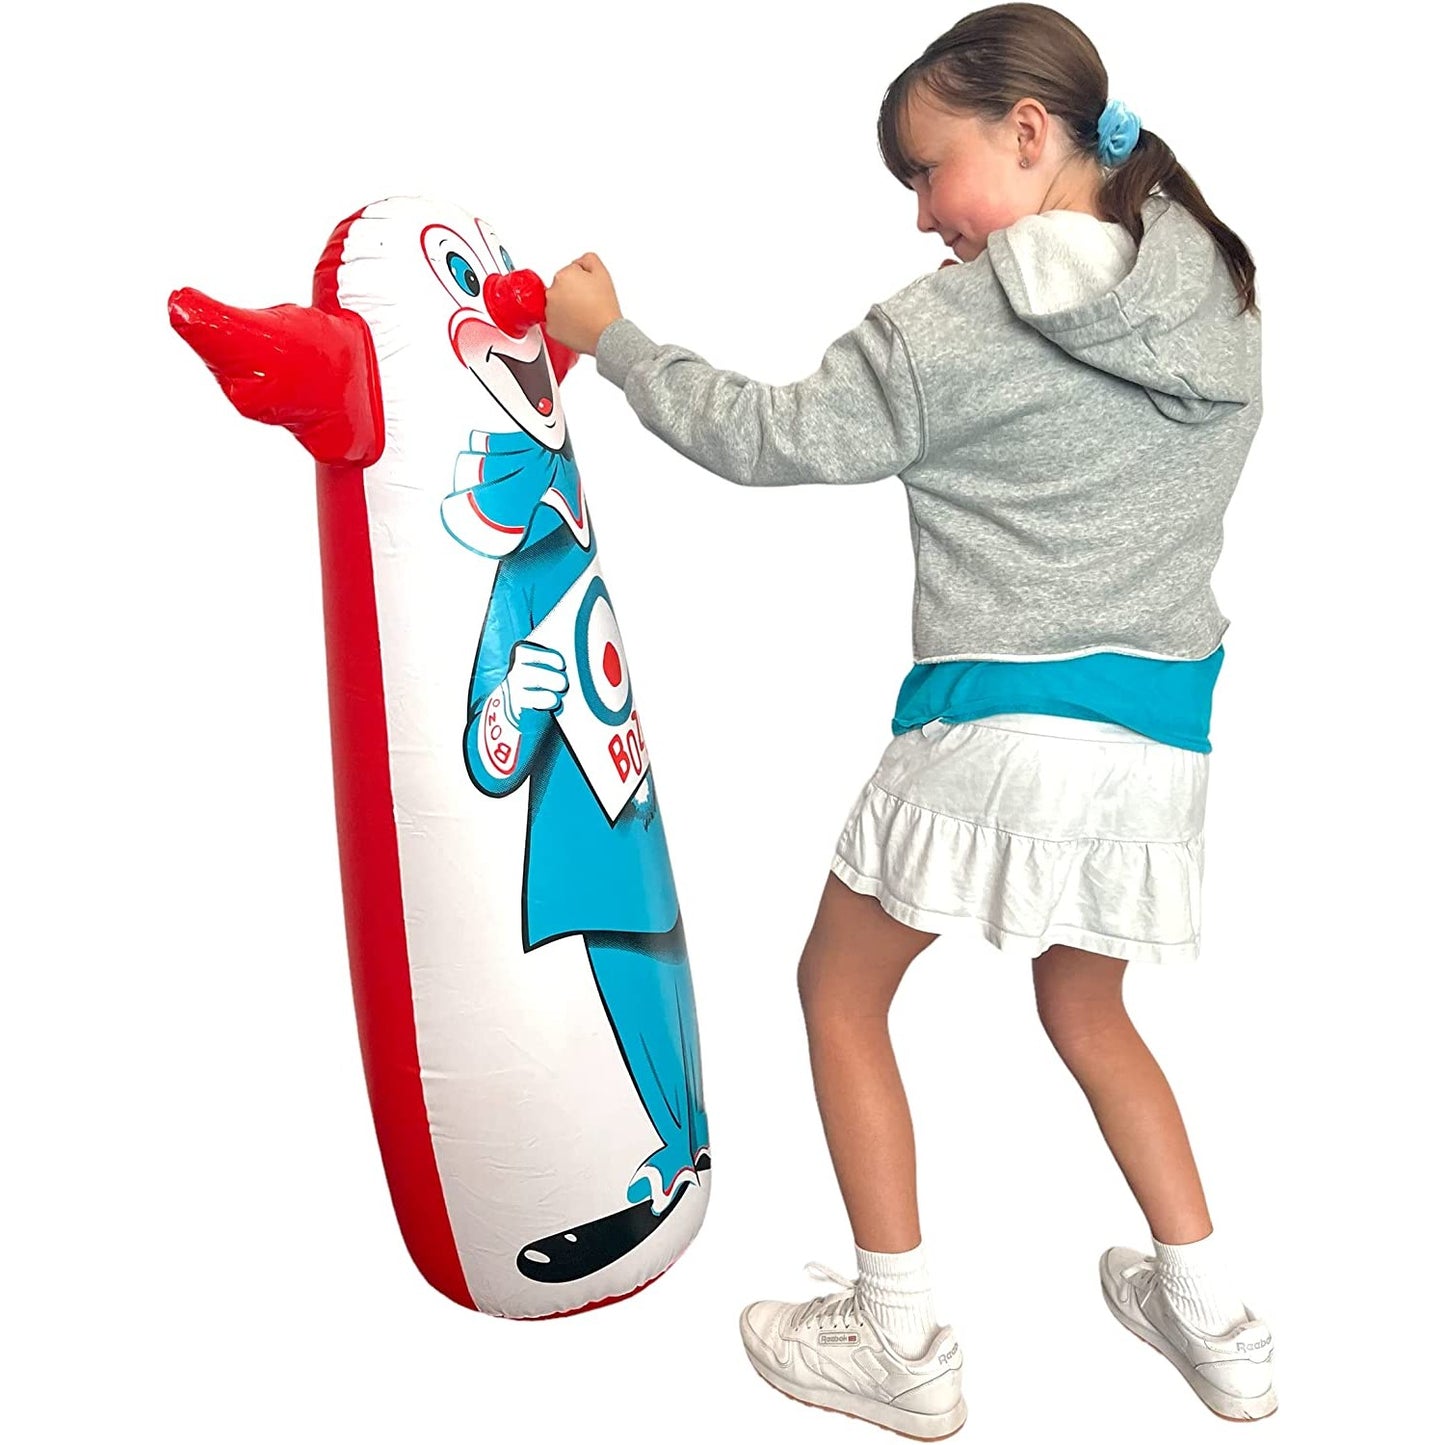 A girl is punching an original Bozo the clown bop bag.